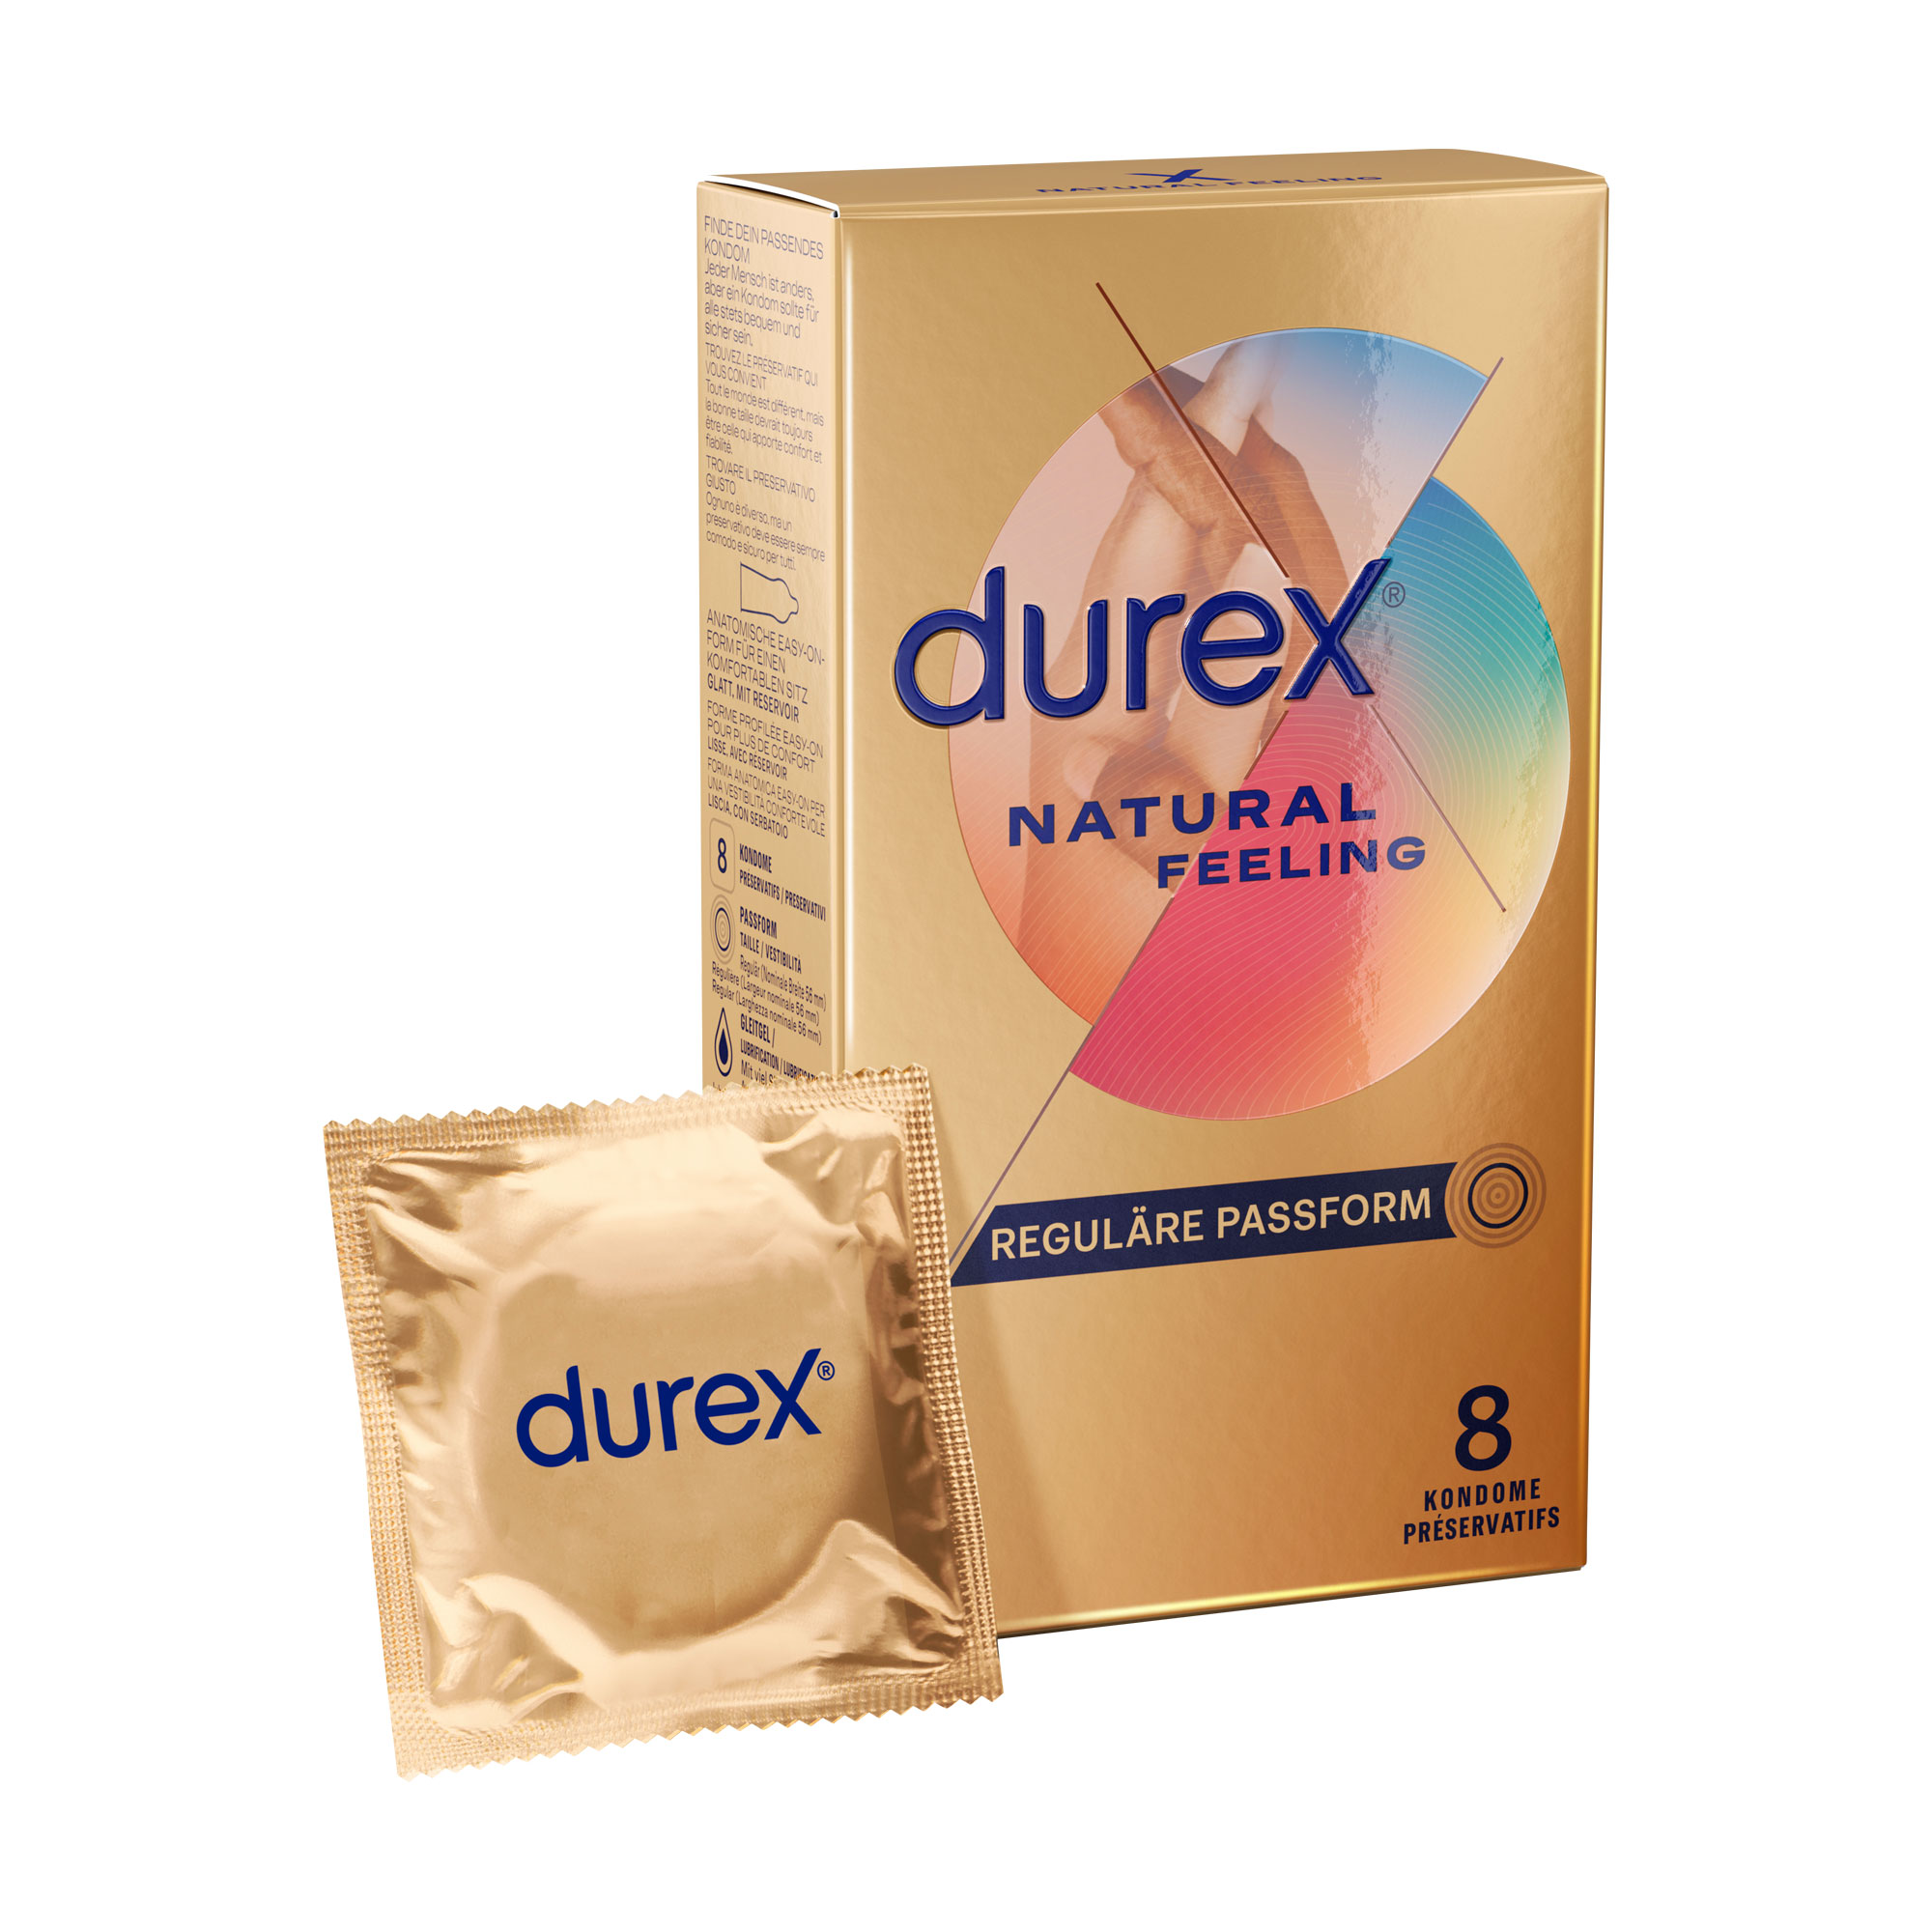 Latexfreie Kondome für ein natürliches Haut-an-Haut-Gefühl.